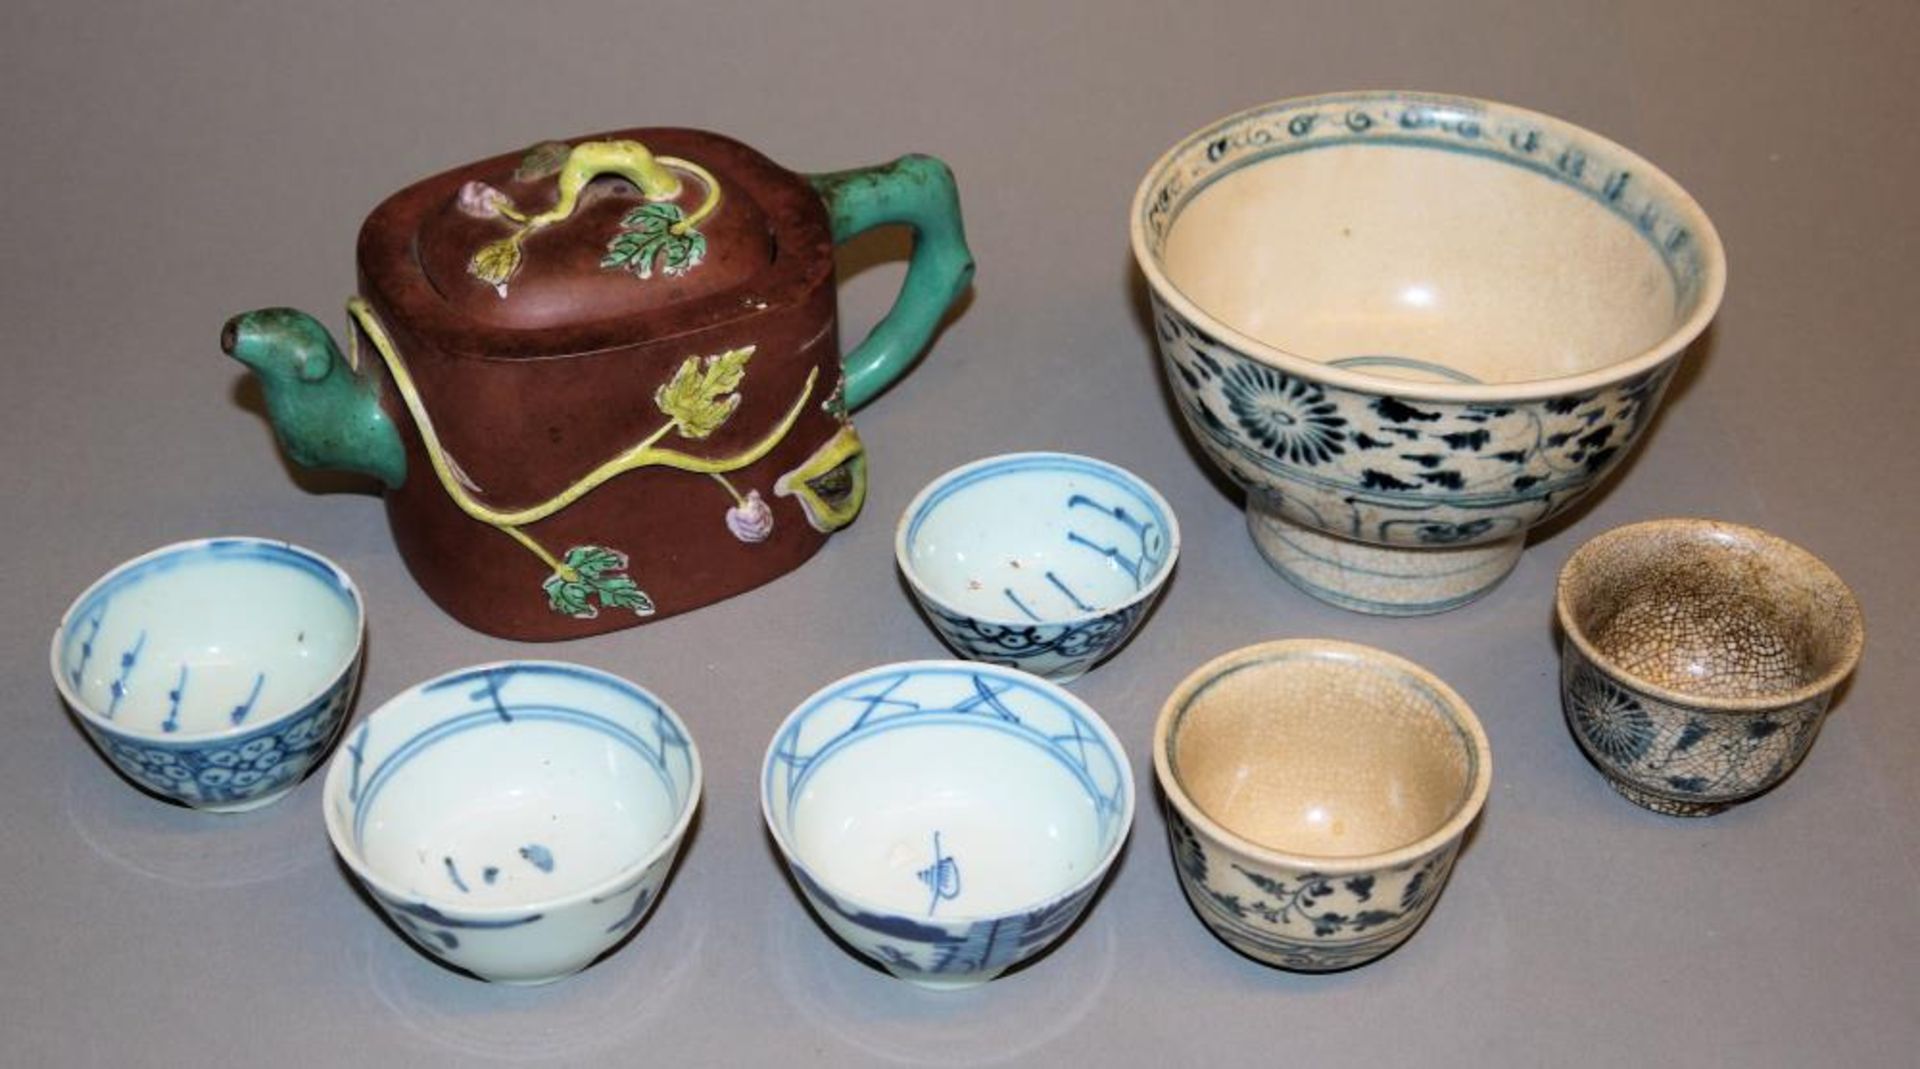 Acht asiatische Porzellane, China und Vietnam, ab 15. Jh. Große Blau-Weiß-Schale, wohl Hoi An-